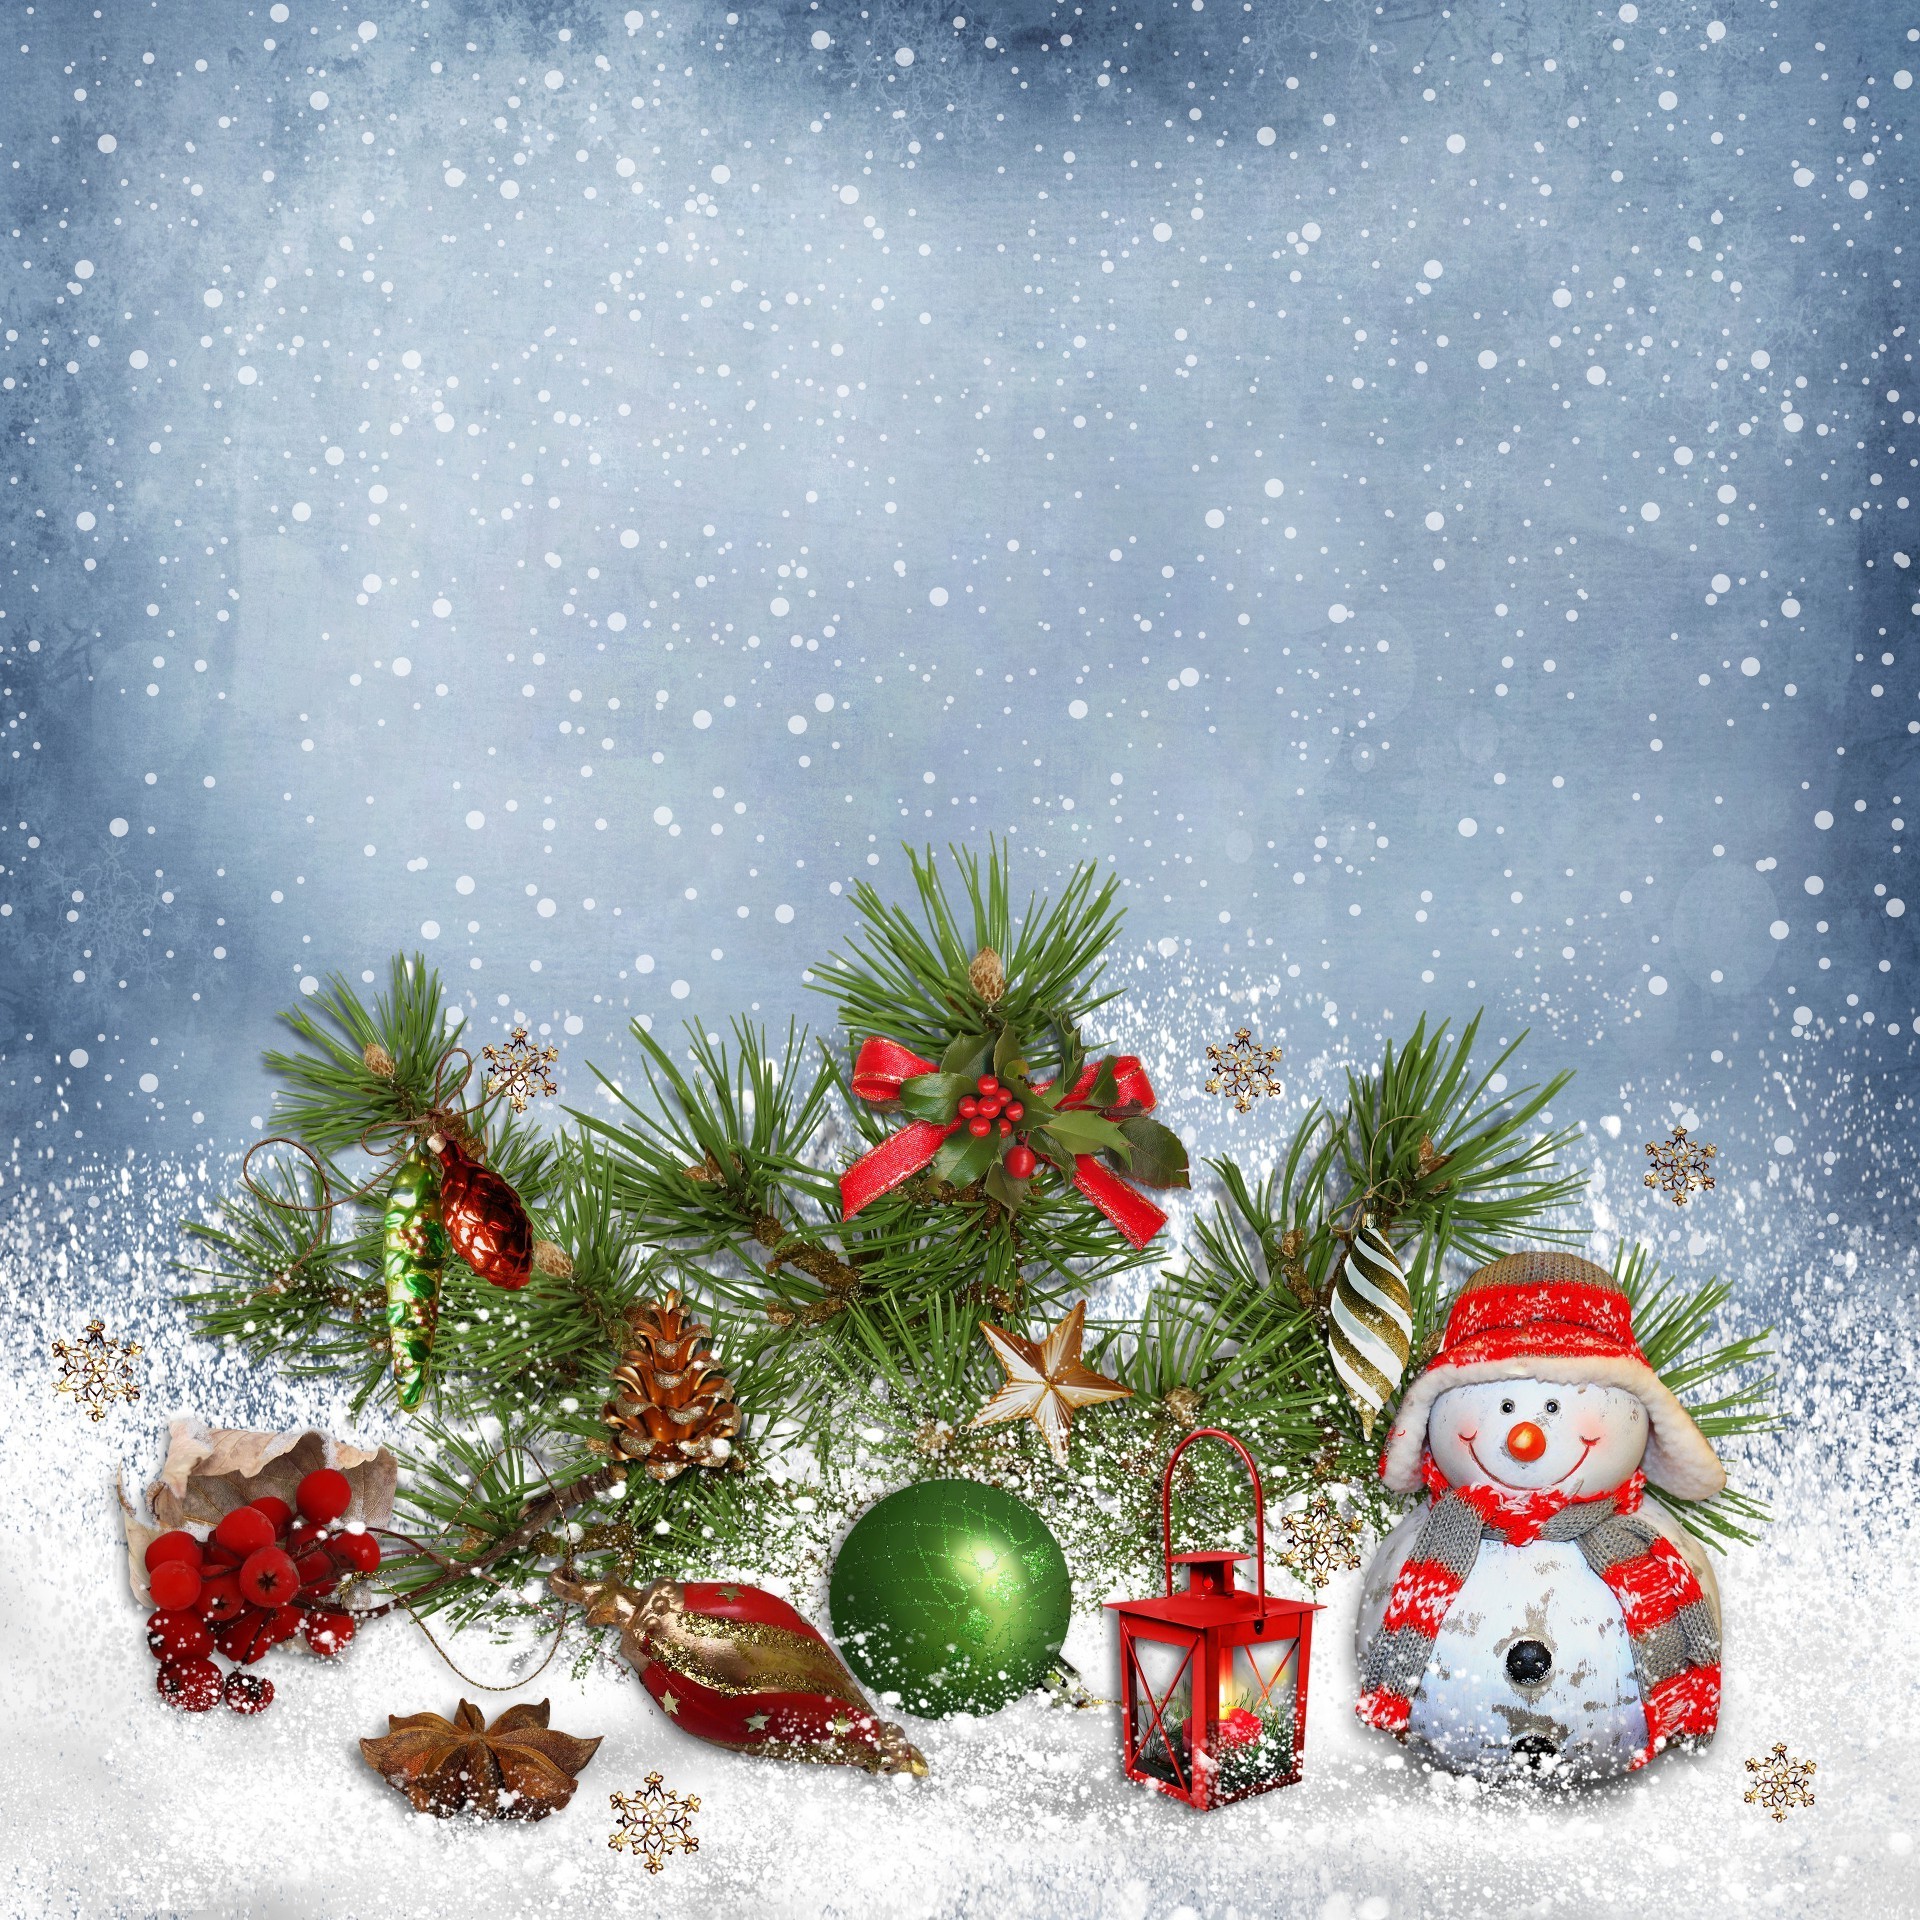 новый год рождество зима праздник мерри пихта украшения сосна дерево мяч снег снежинка ева эвергрин отпуск сезон браслет ели филиал карта появлением